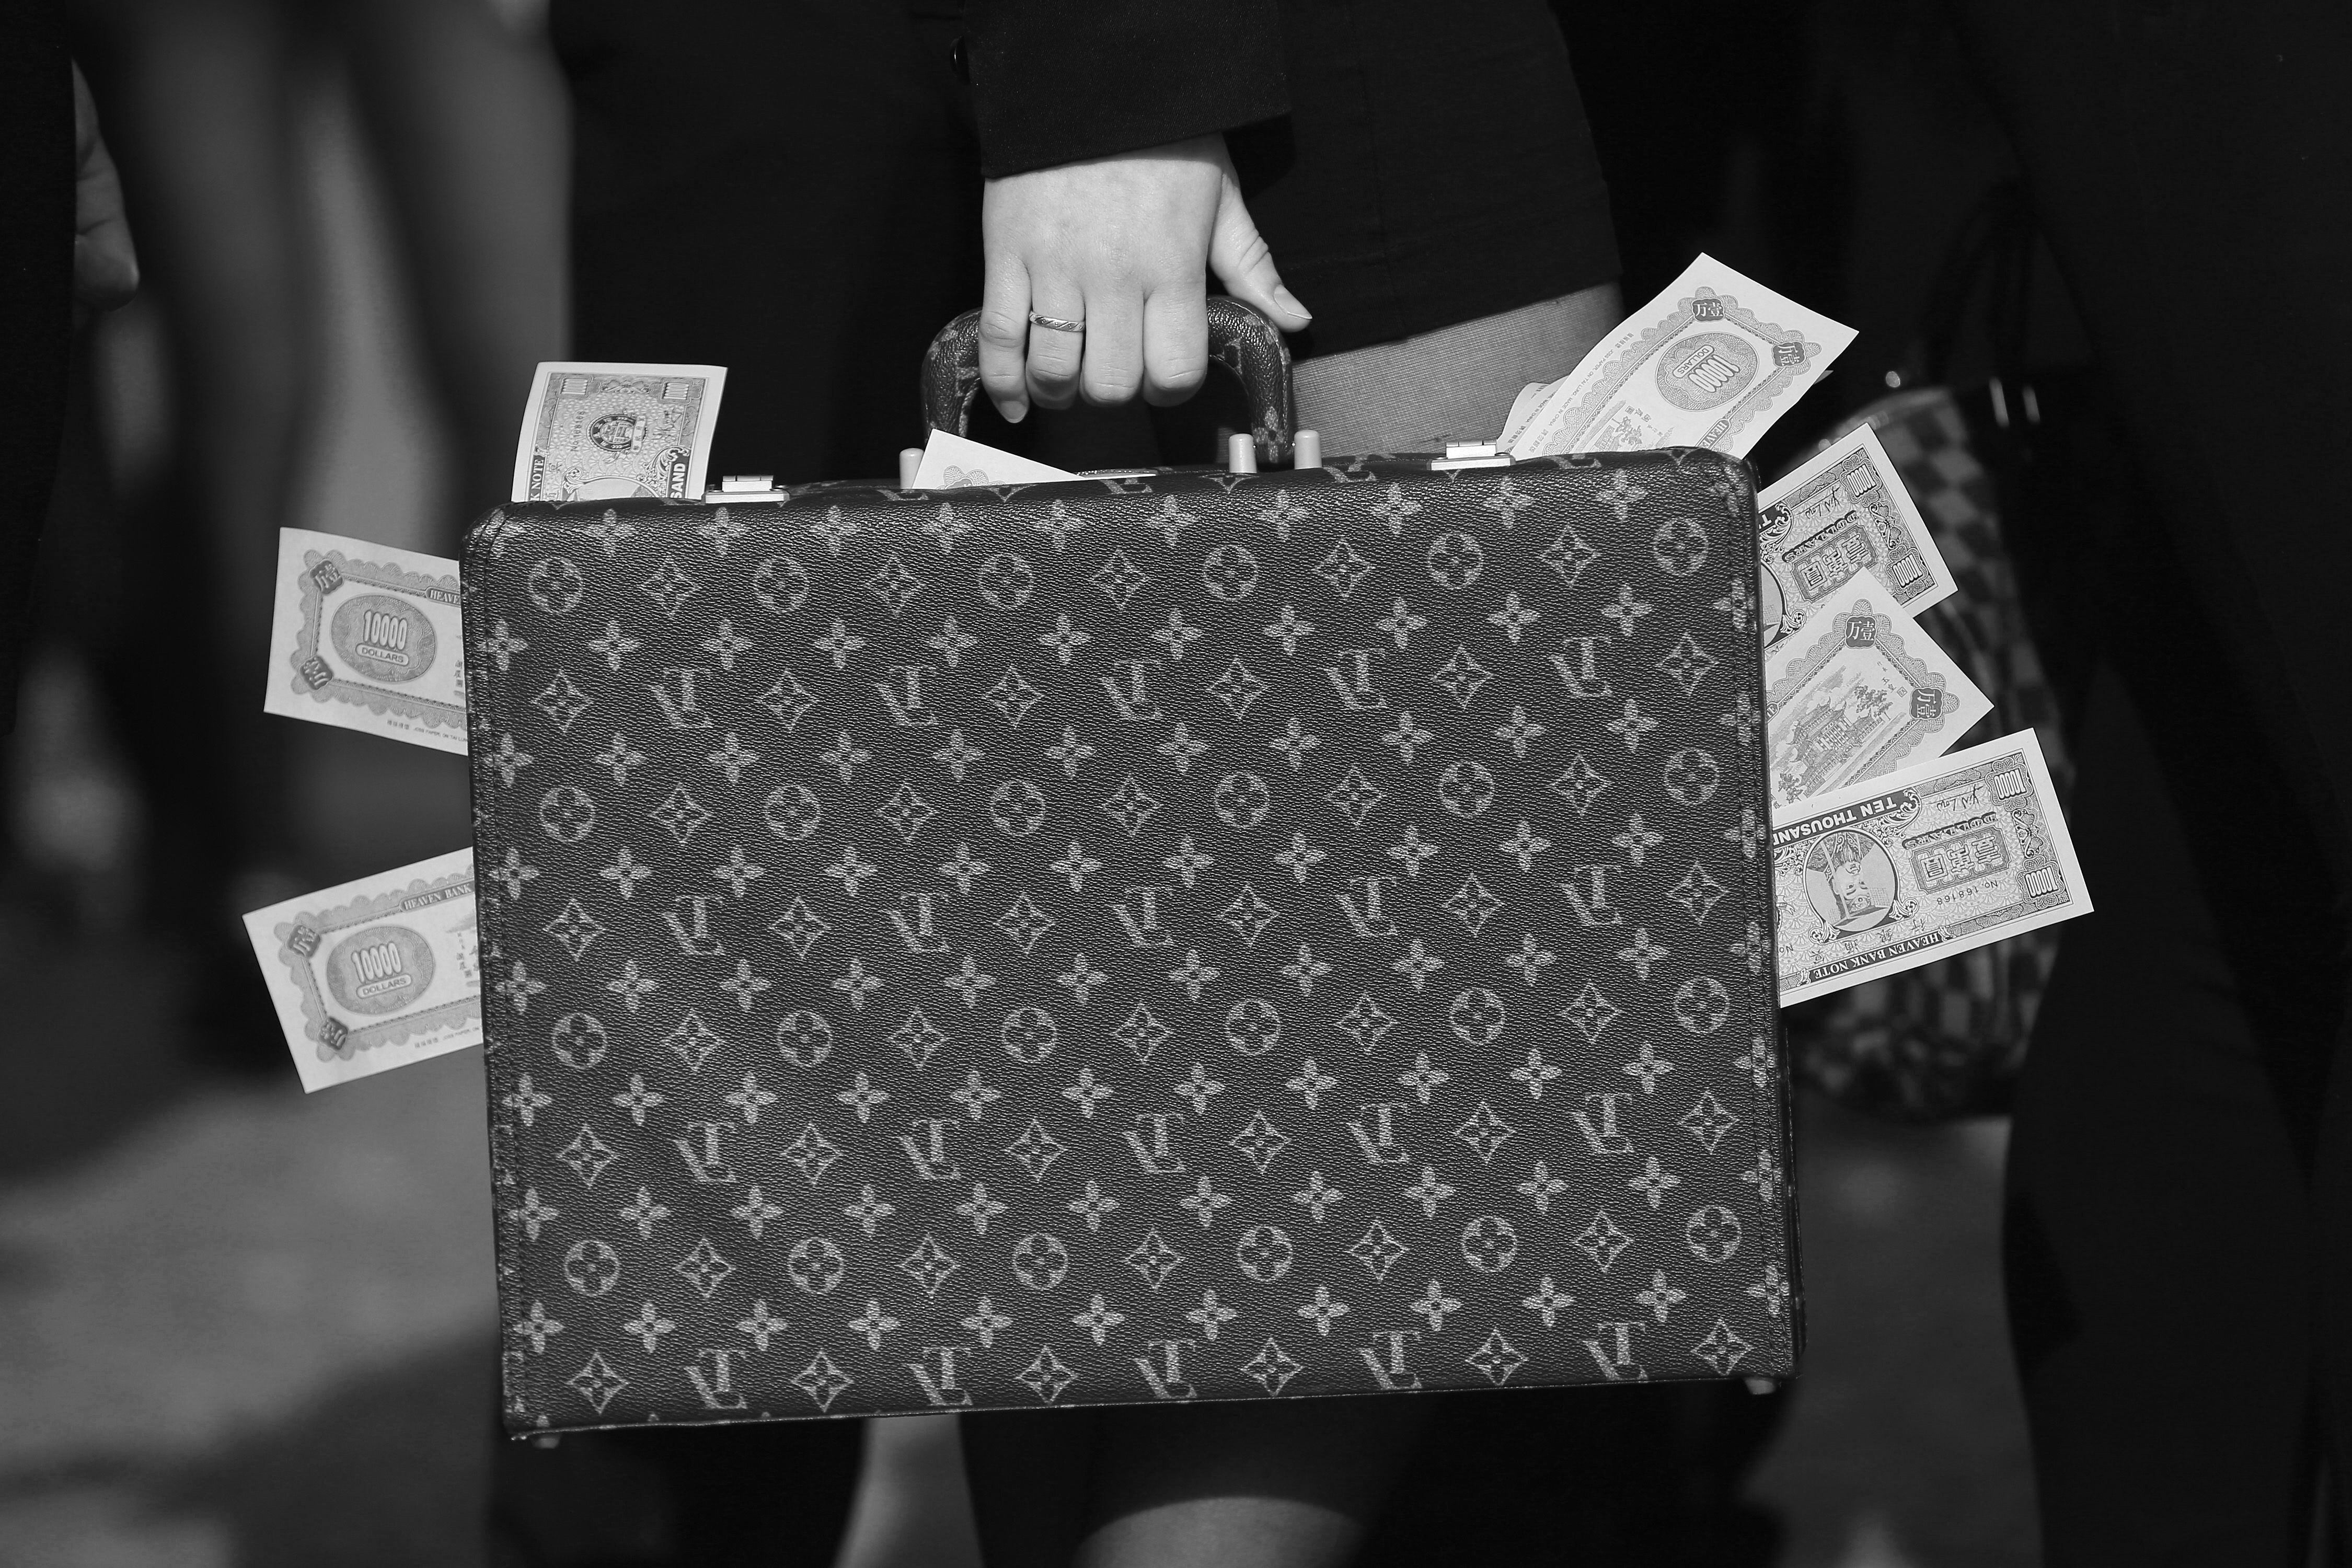 Un activista berlinés lleva una maleta llena de dinero falso para exigir mayor transparencia tras los Papeles de Panamá en abril de 2016.